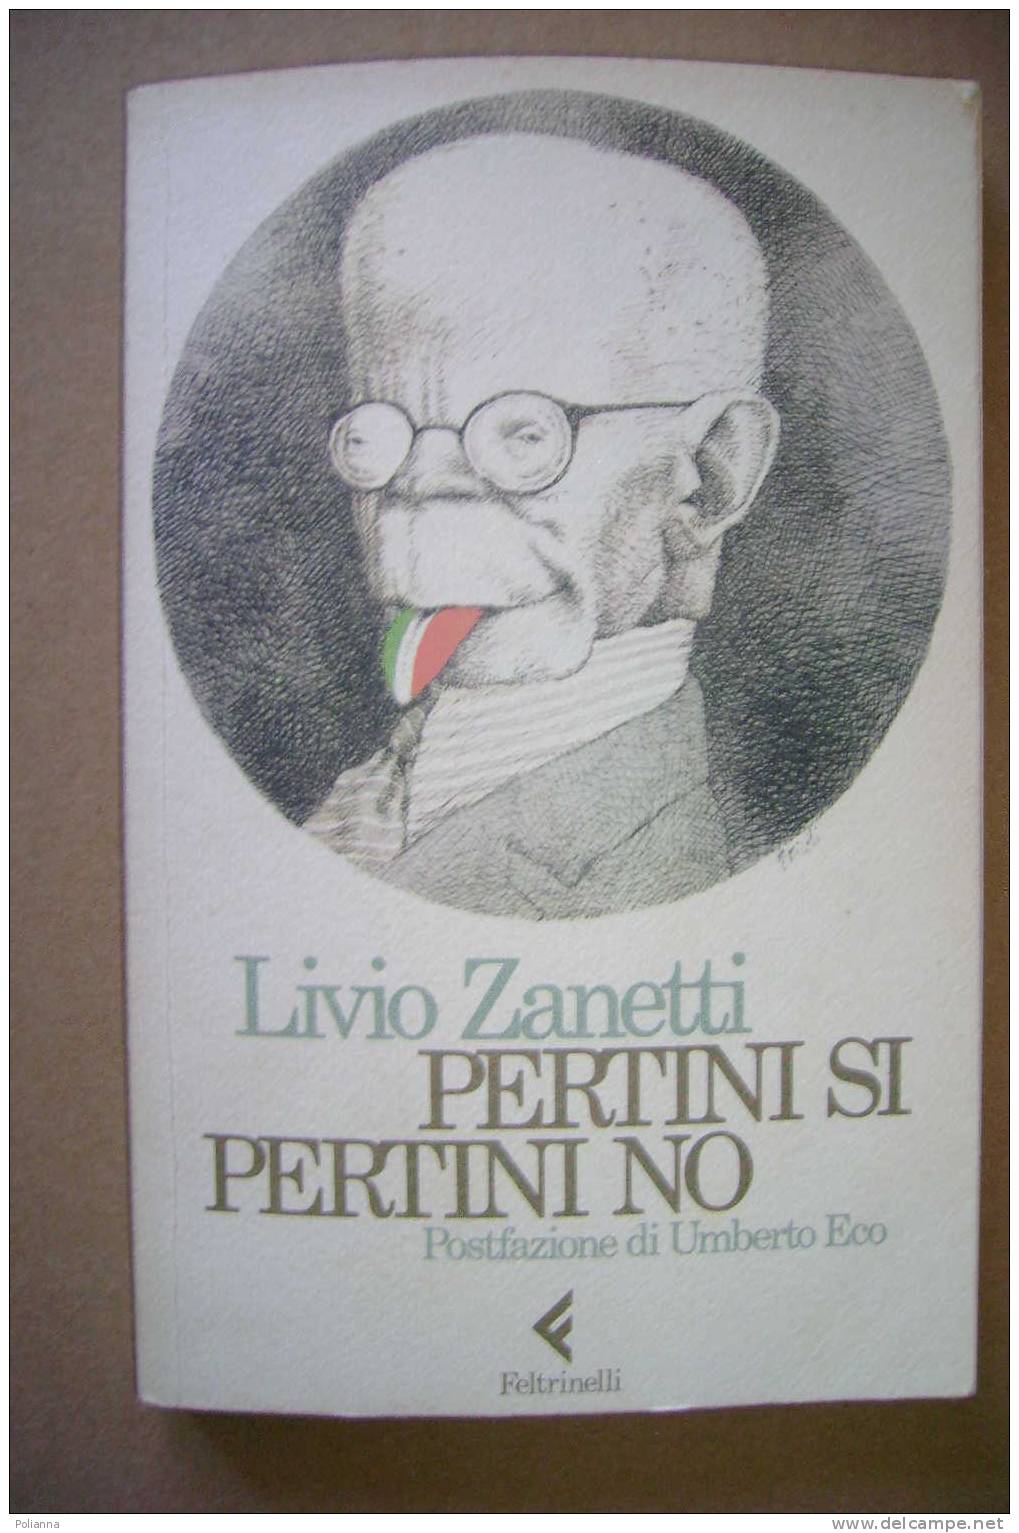 PAM/20 L.Zanetti PERTINI SI PERTINI NO Feltrinelli I Ed.1985. Postfazione Di Umberto Eco - Society, Politics & Economy